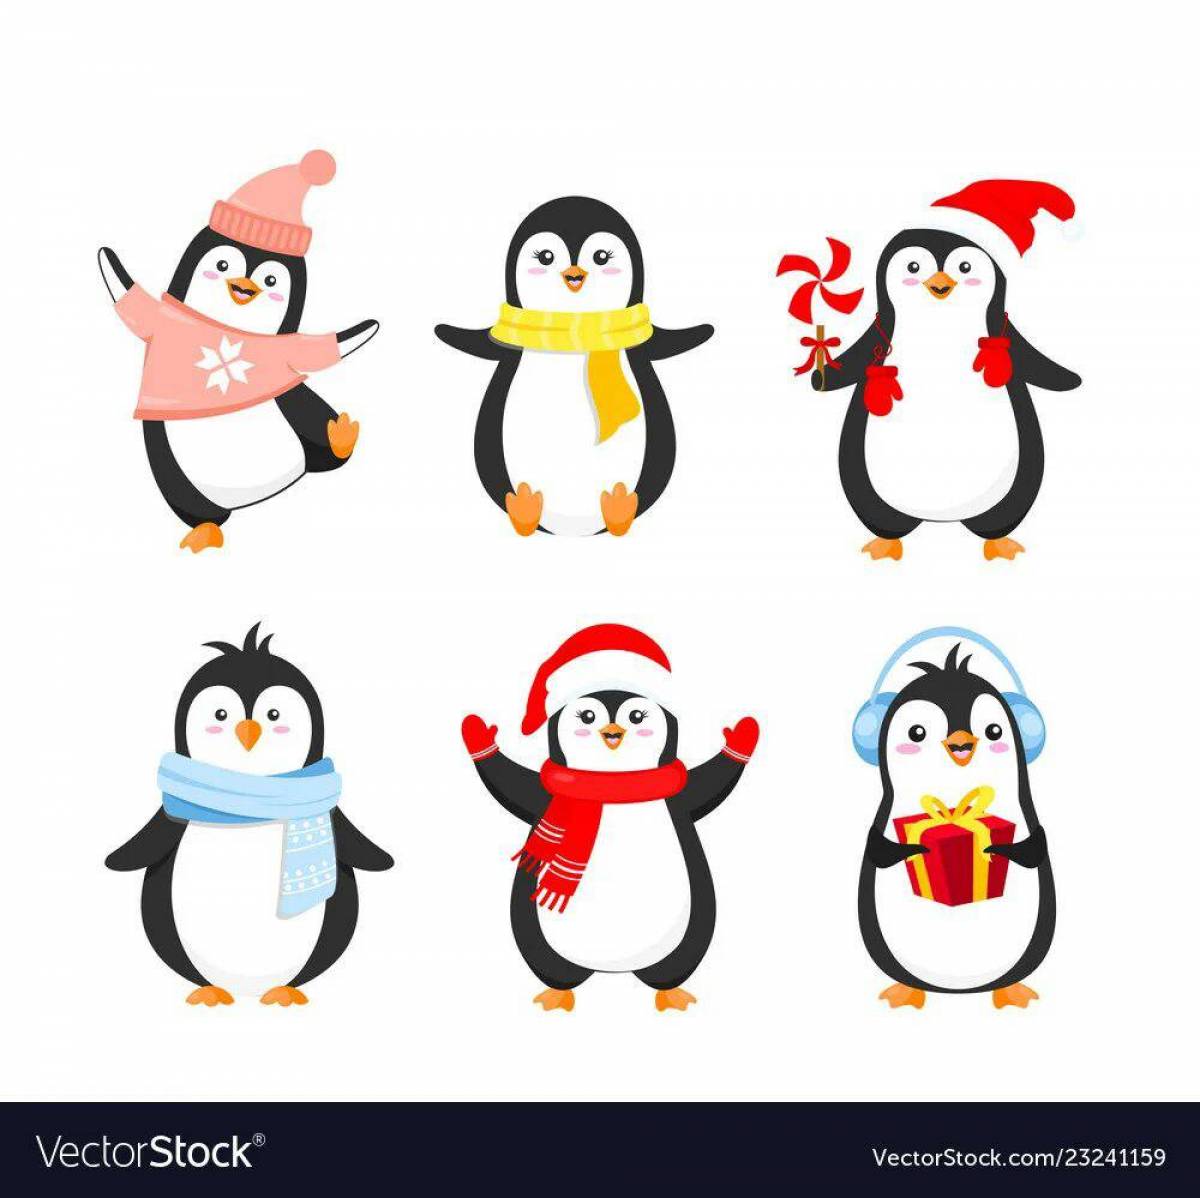 Пингвины для детей 5 6 лет #27